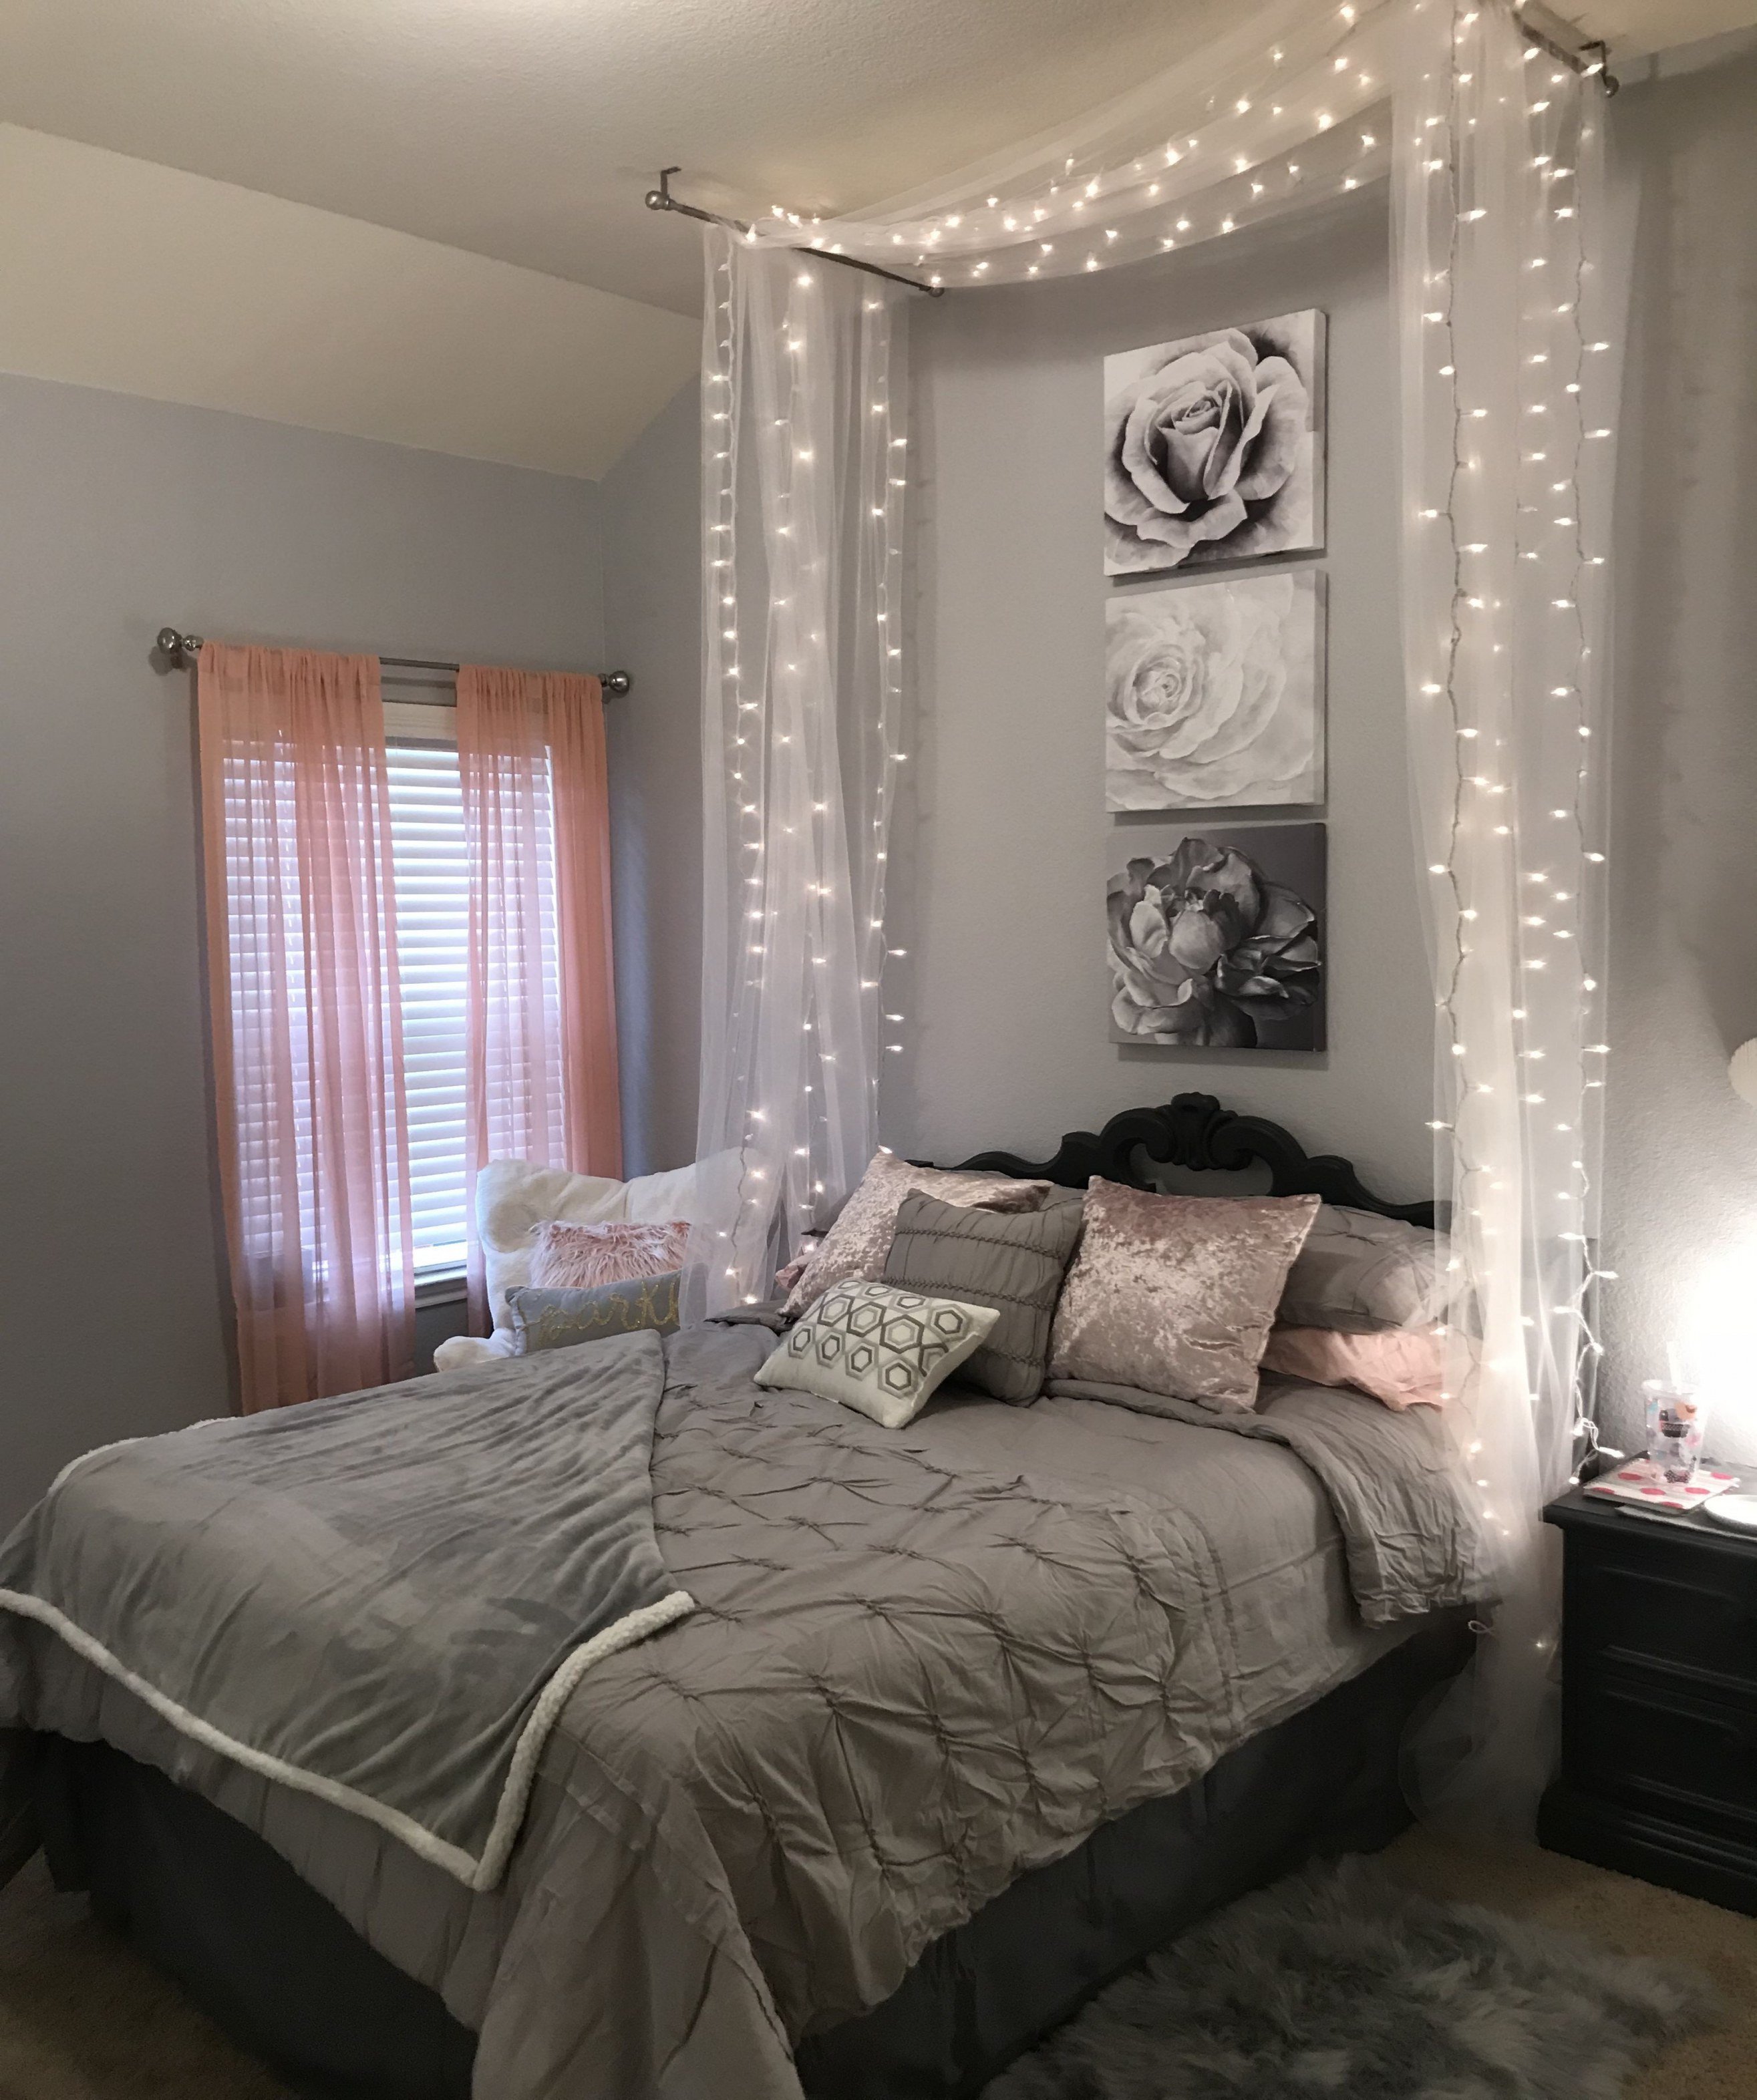 Teenage Girl Bedroom Decor Beautiful Tween Bedroom Ideas Home Ideas Diy Teen Room Decor Most